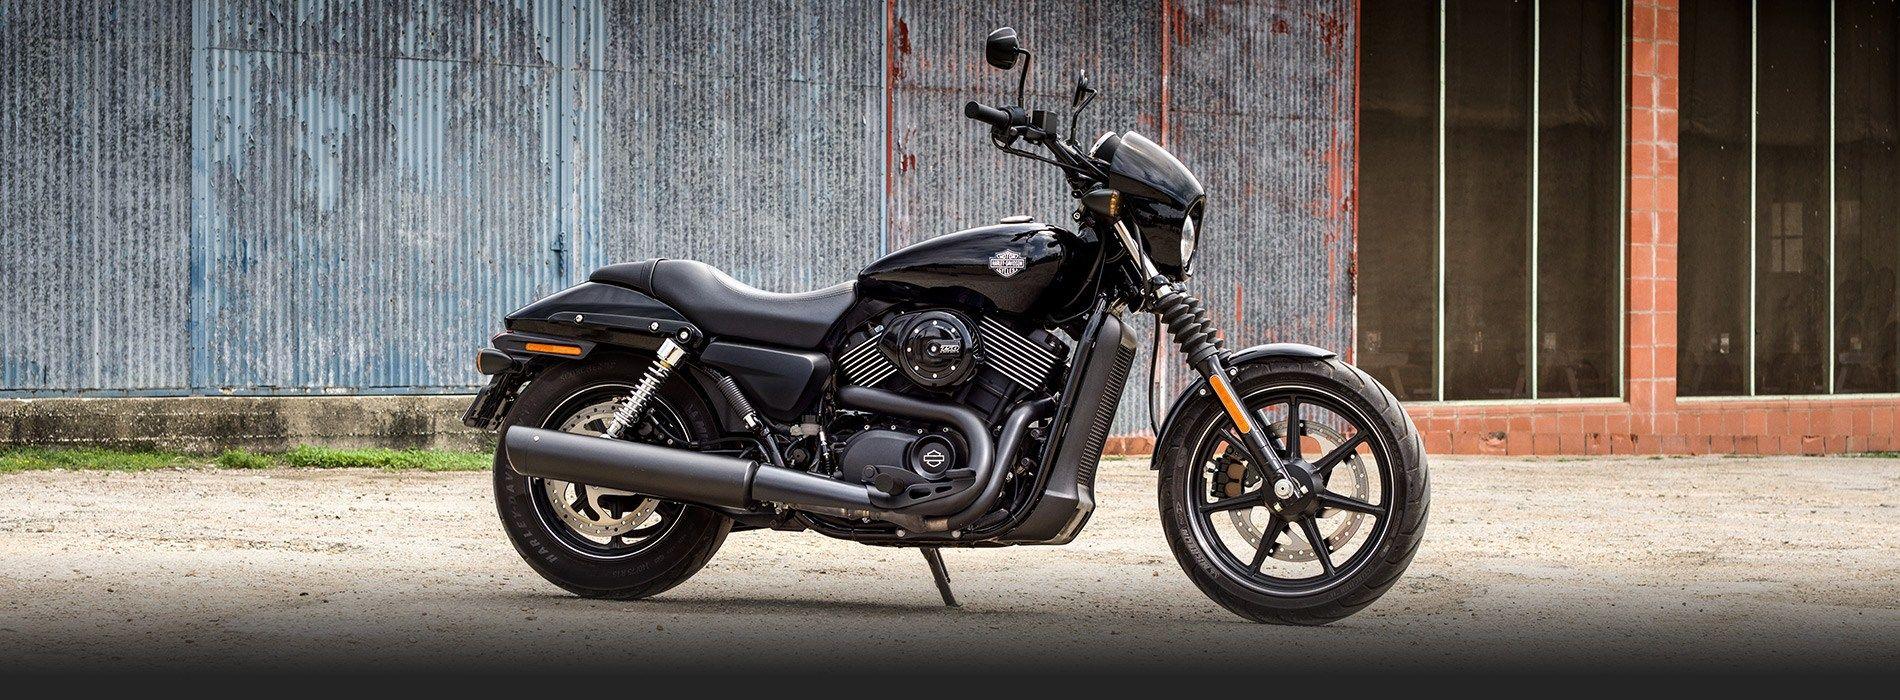 Harley Davidson Bikes HD Wallpaper, Image All Motorcycles Models